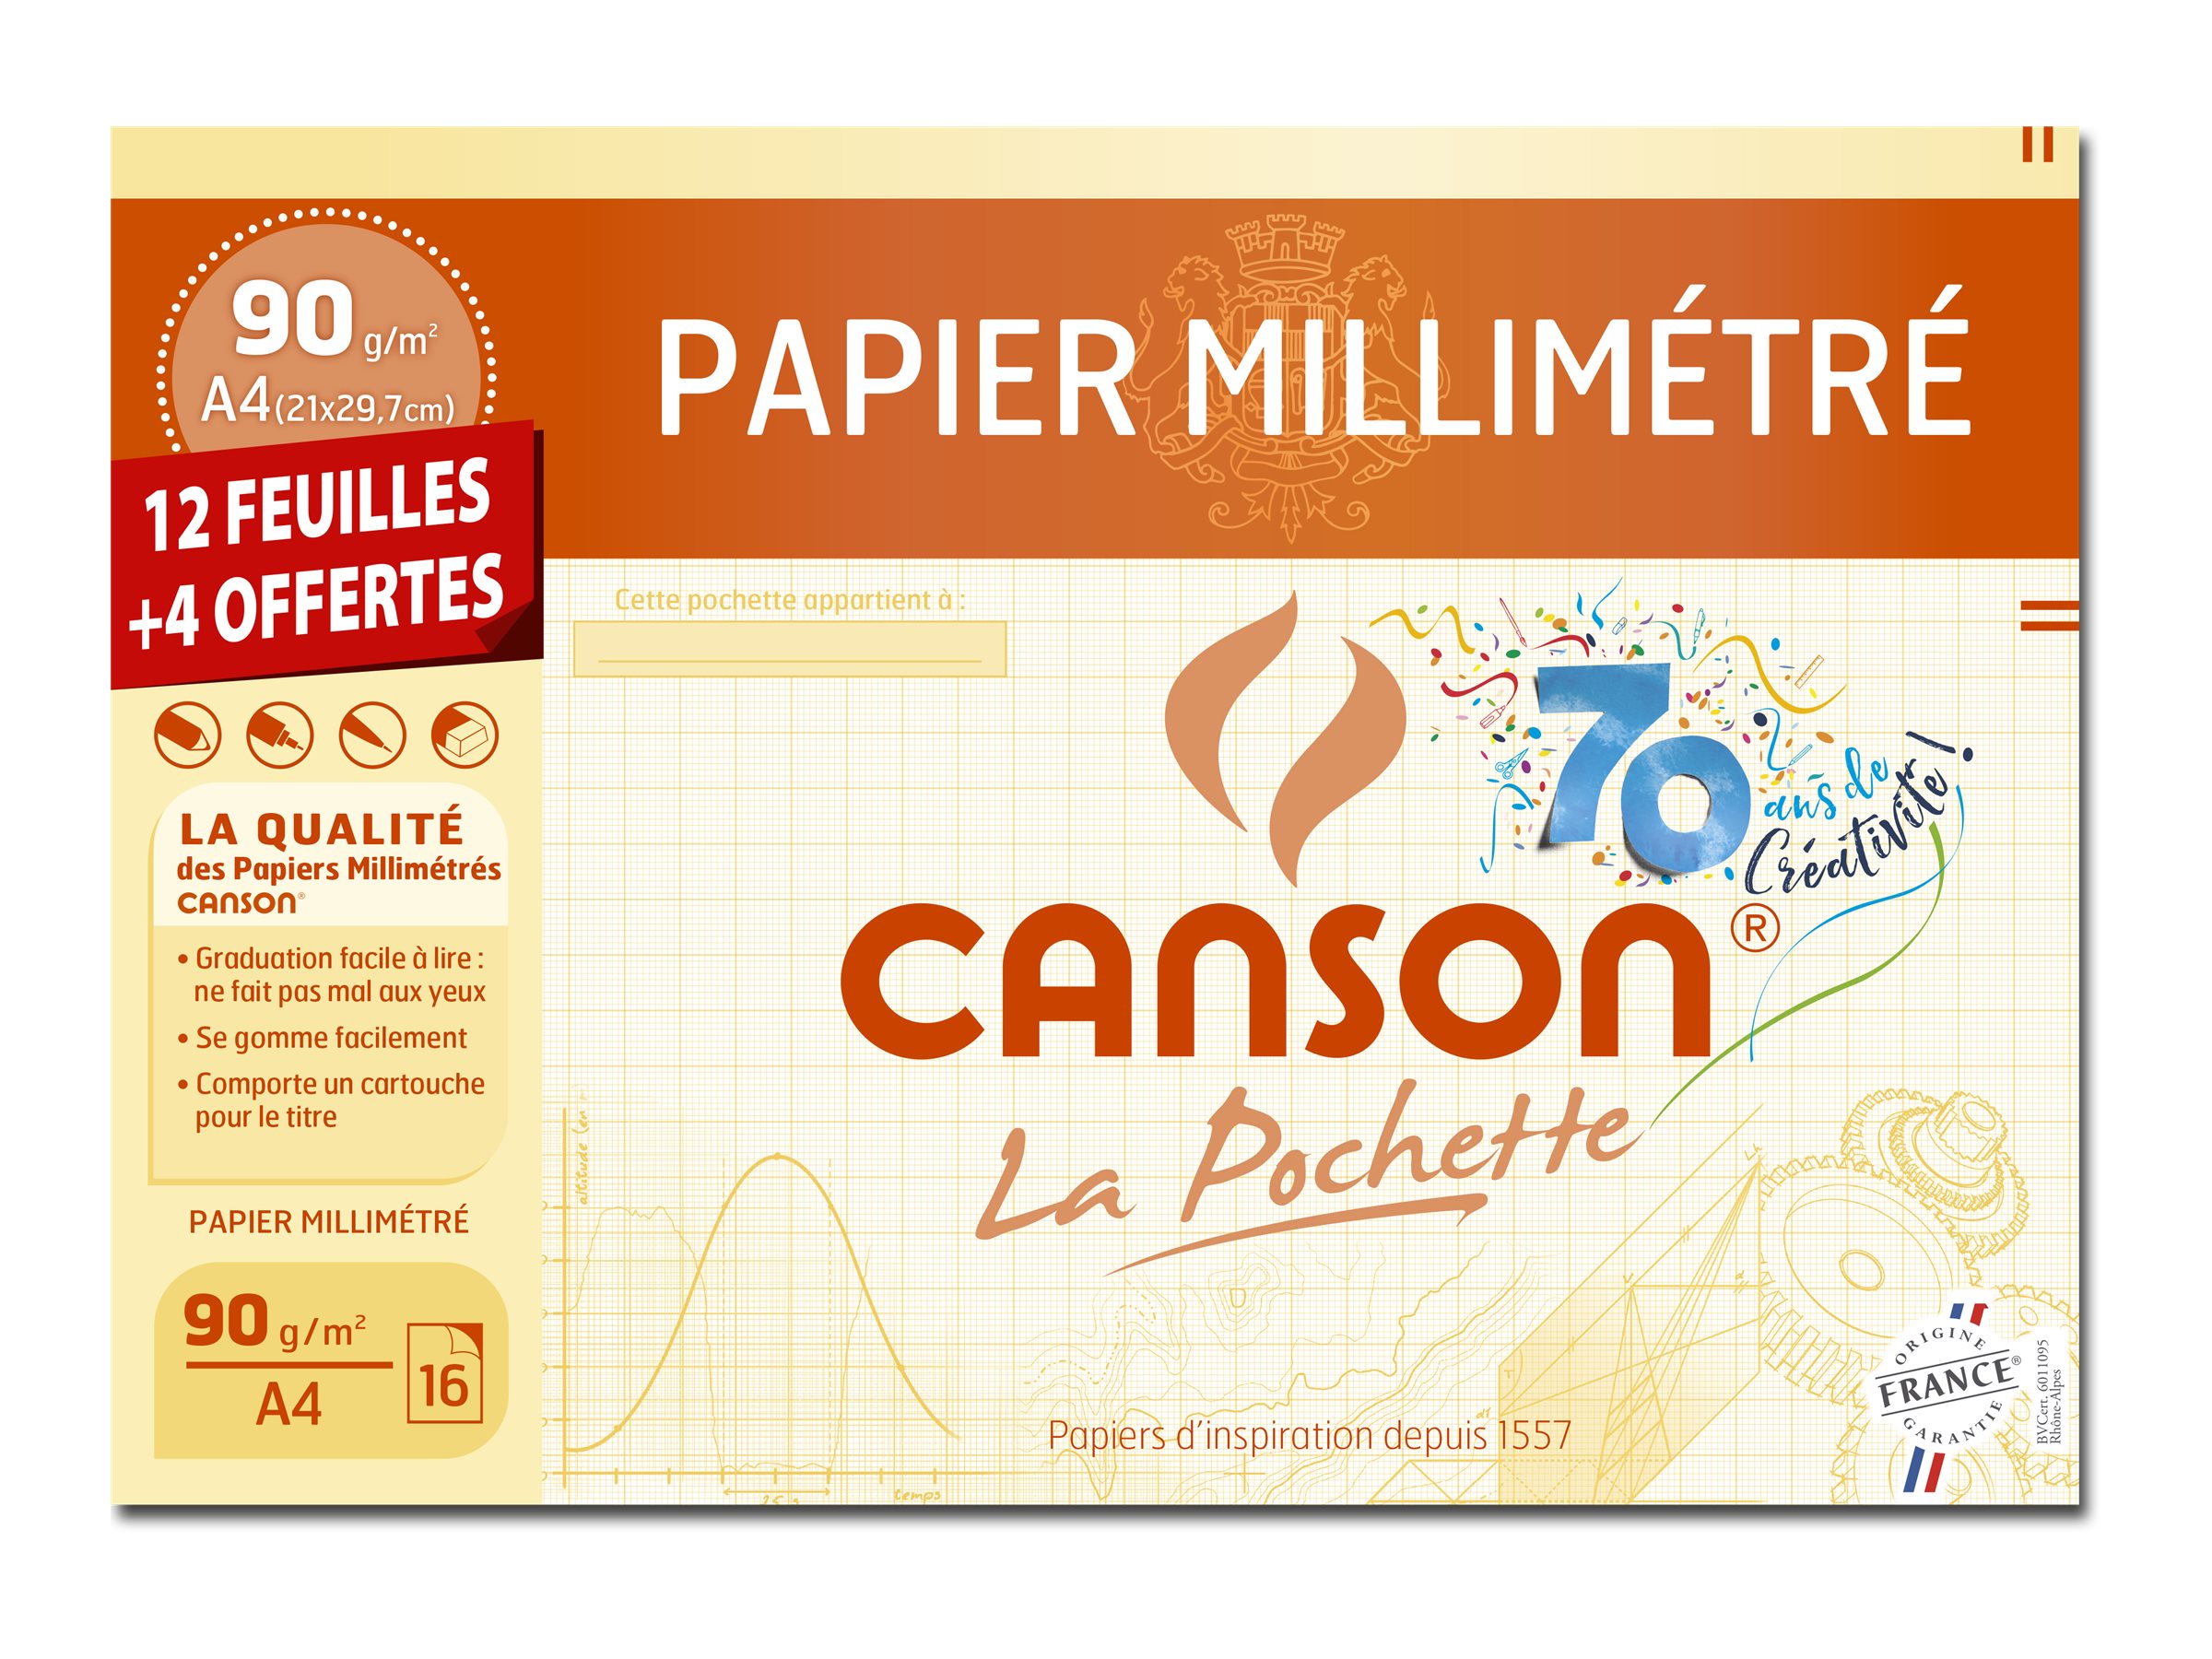 CANSON La Pochette millimétré - papier millimétré